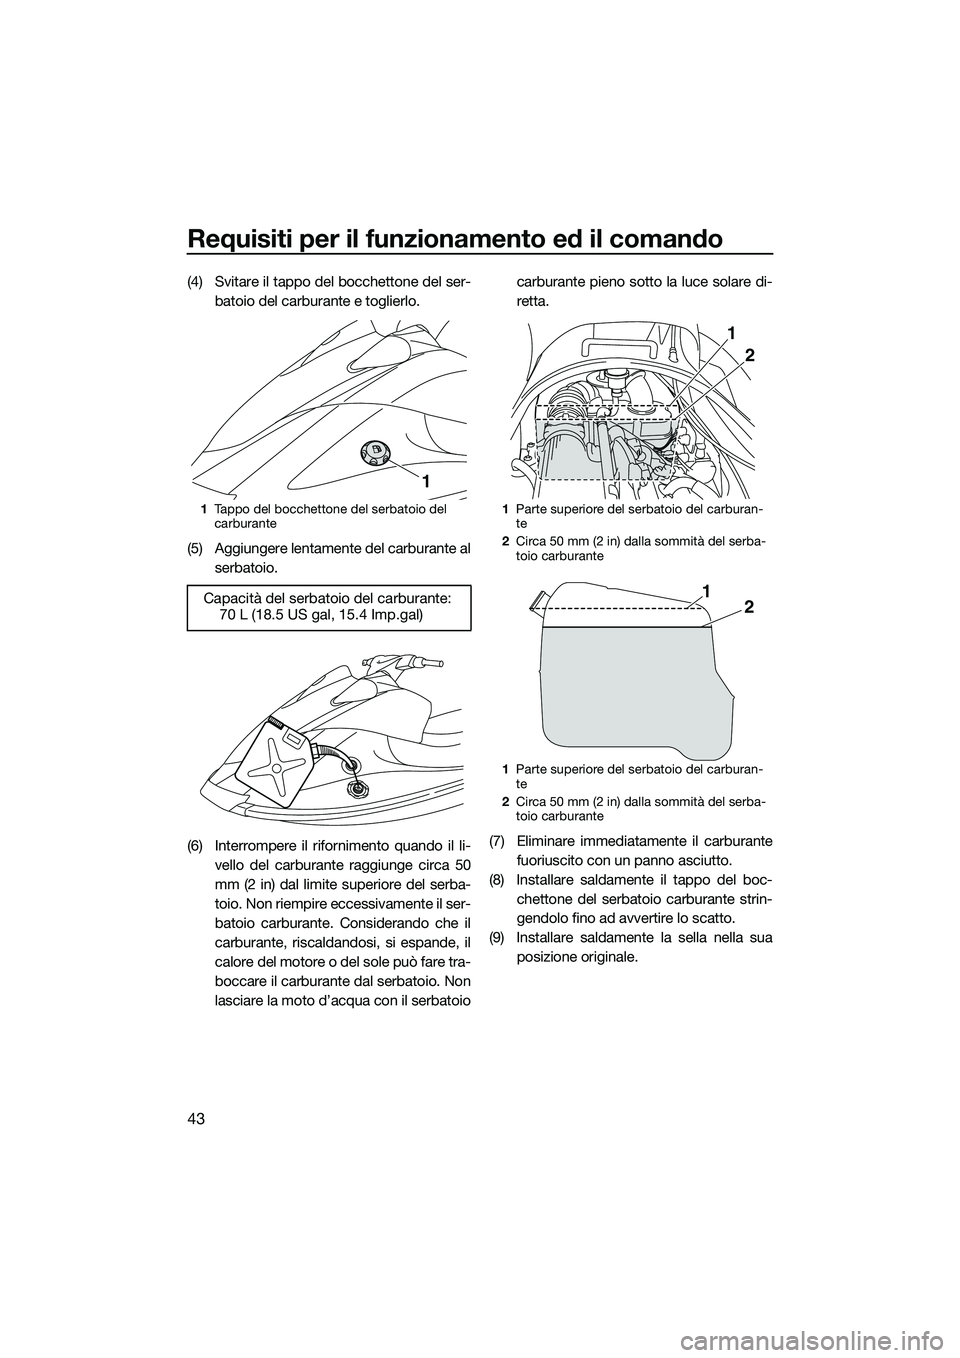 YAMAHA V1 SPORT 2015  Manuale duso (in Italian) Requisiti per il funzionamento ed il comando
43
(4) Svitare il tappo del bocchettone del ser-batoio del carburante e toglierlo.
(5) Aggiungere lentamente del carburante al serbatoio.
(6) Interrompere 